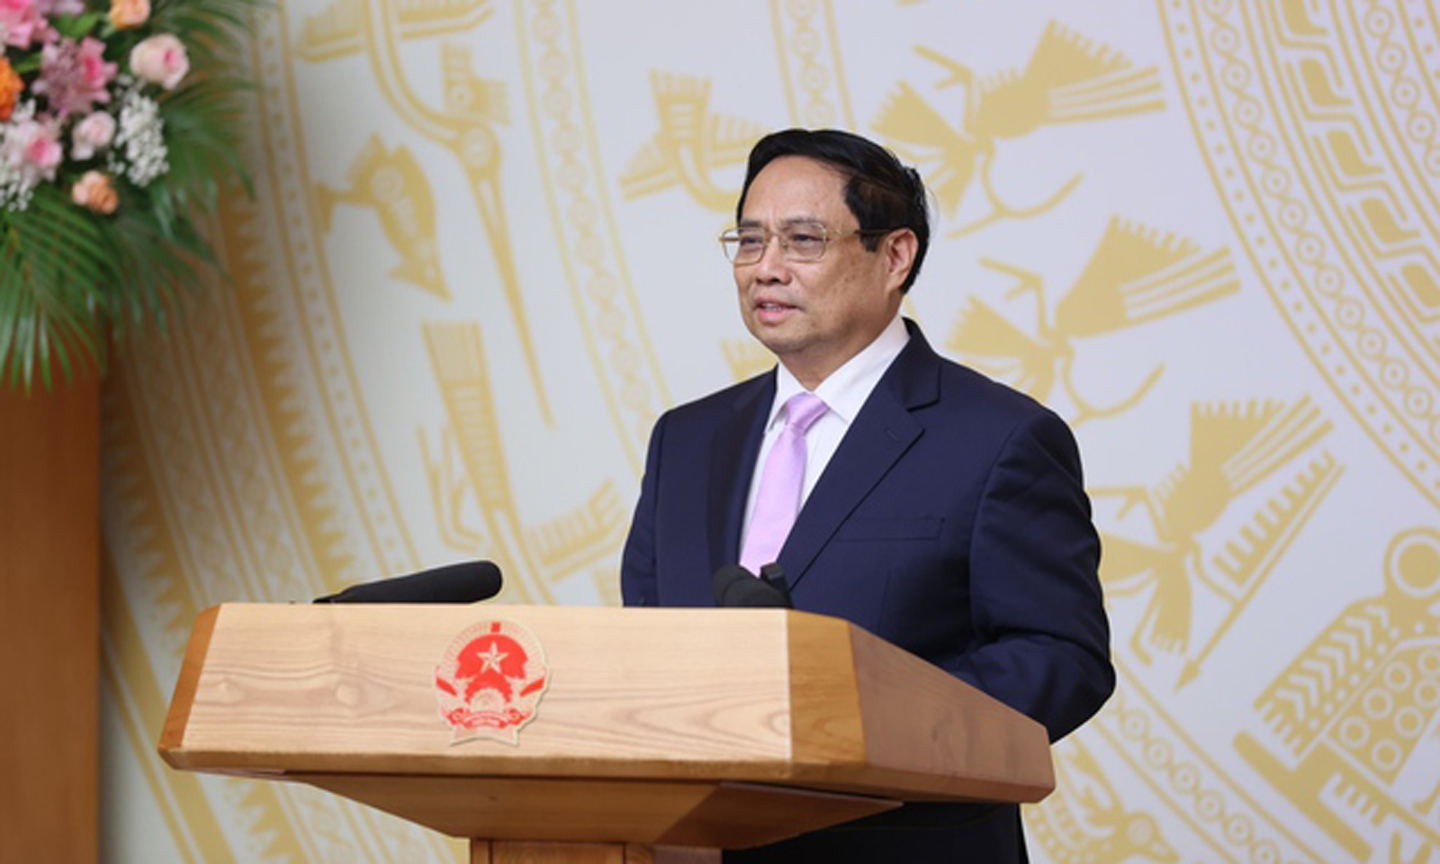 Thủ tướng phát biểu tại buổi gặp mặt đại diện các nhà giáo tiêu biểu vào chiều 17/11 - Ảnh: VGP/Quang Thương